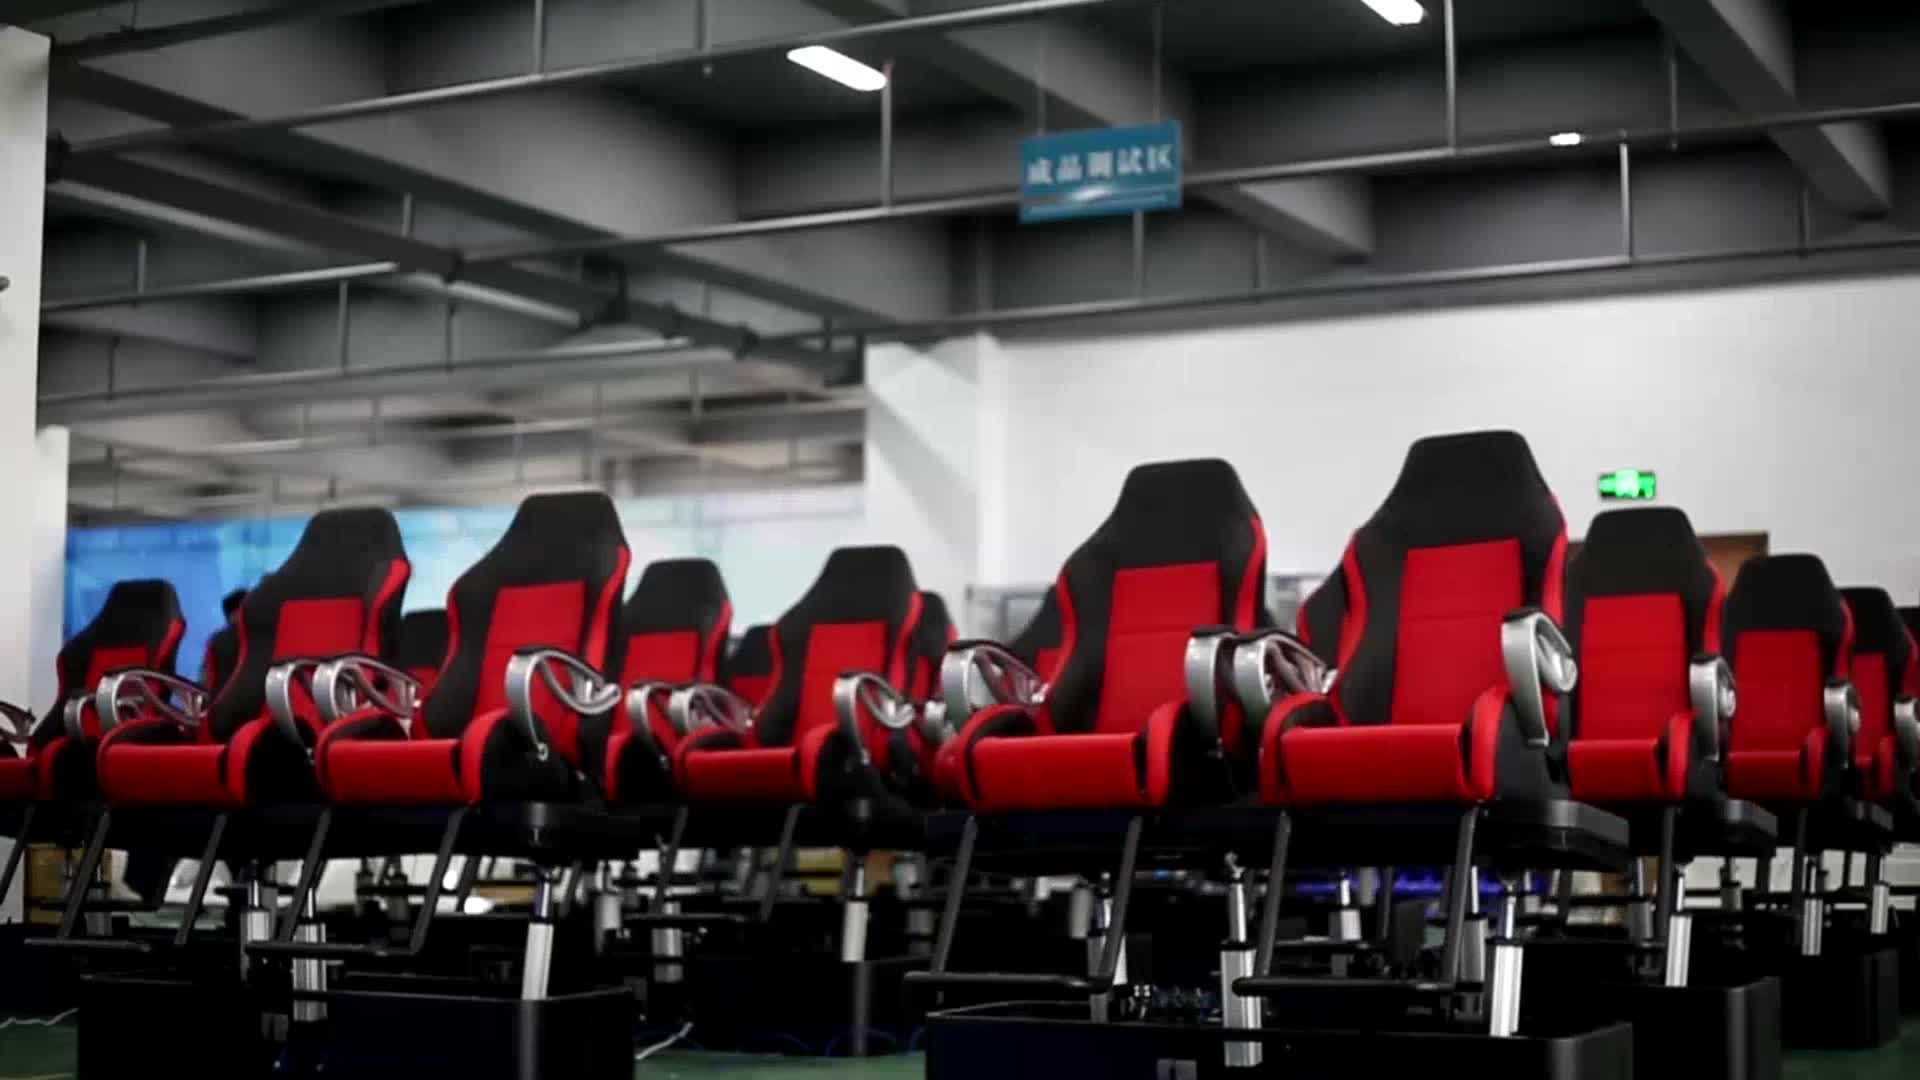 5d7d动感影院设备vr内容座椅定制